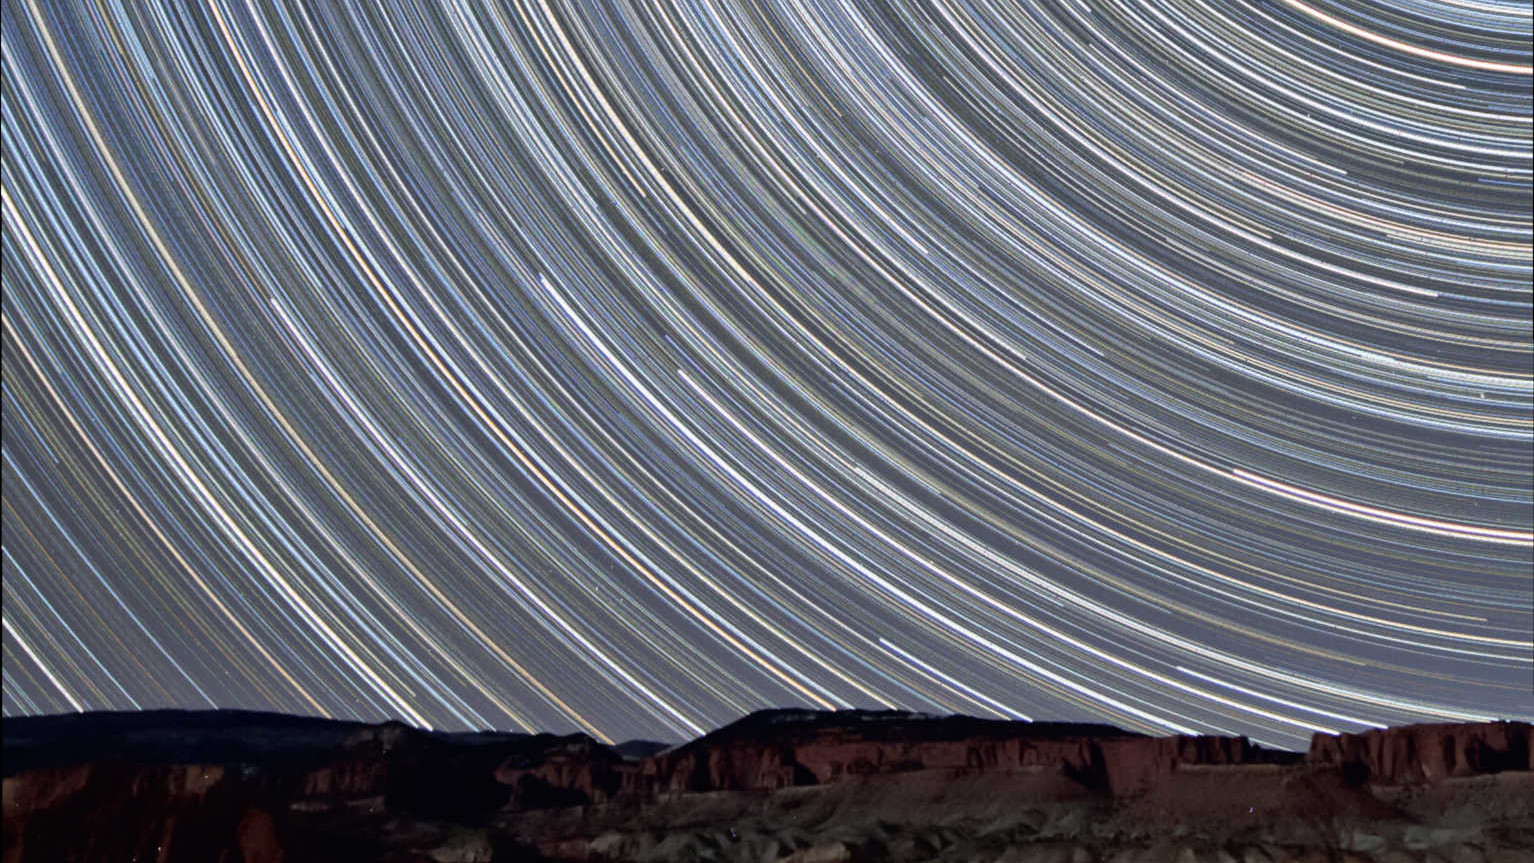 Aceste fotografii startrail au fost făcute la câțiva kilometri de Parcul Național Capitol Reef din Utah (SUA). Telescopul a fost îndreptat către nord și arată trecerea stelelor peste rocile de gresie roșie luminate de Luna în creștere. Această imagine compusă combină 350 de fotografii cu un timp de expunere de 90 de secunde fiecare (timp total de expunere: 525 de minute = 8,75 ore). Fotografia a fost realizată cu un obiectiv 10-20mm (la 10mm și f/4) pe un Canon DSLR tip 450D. U. Dittler